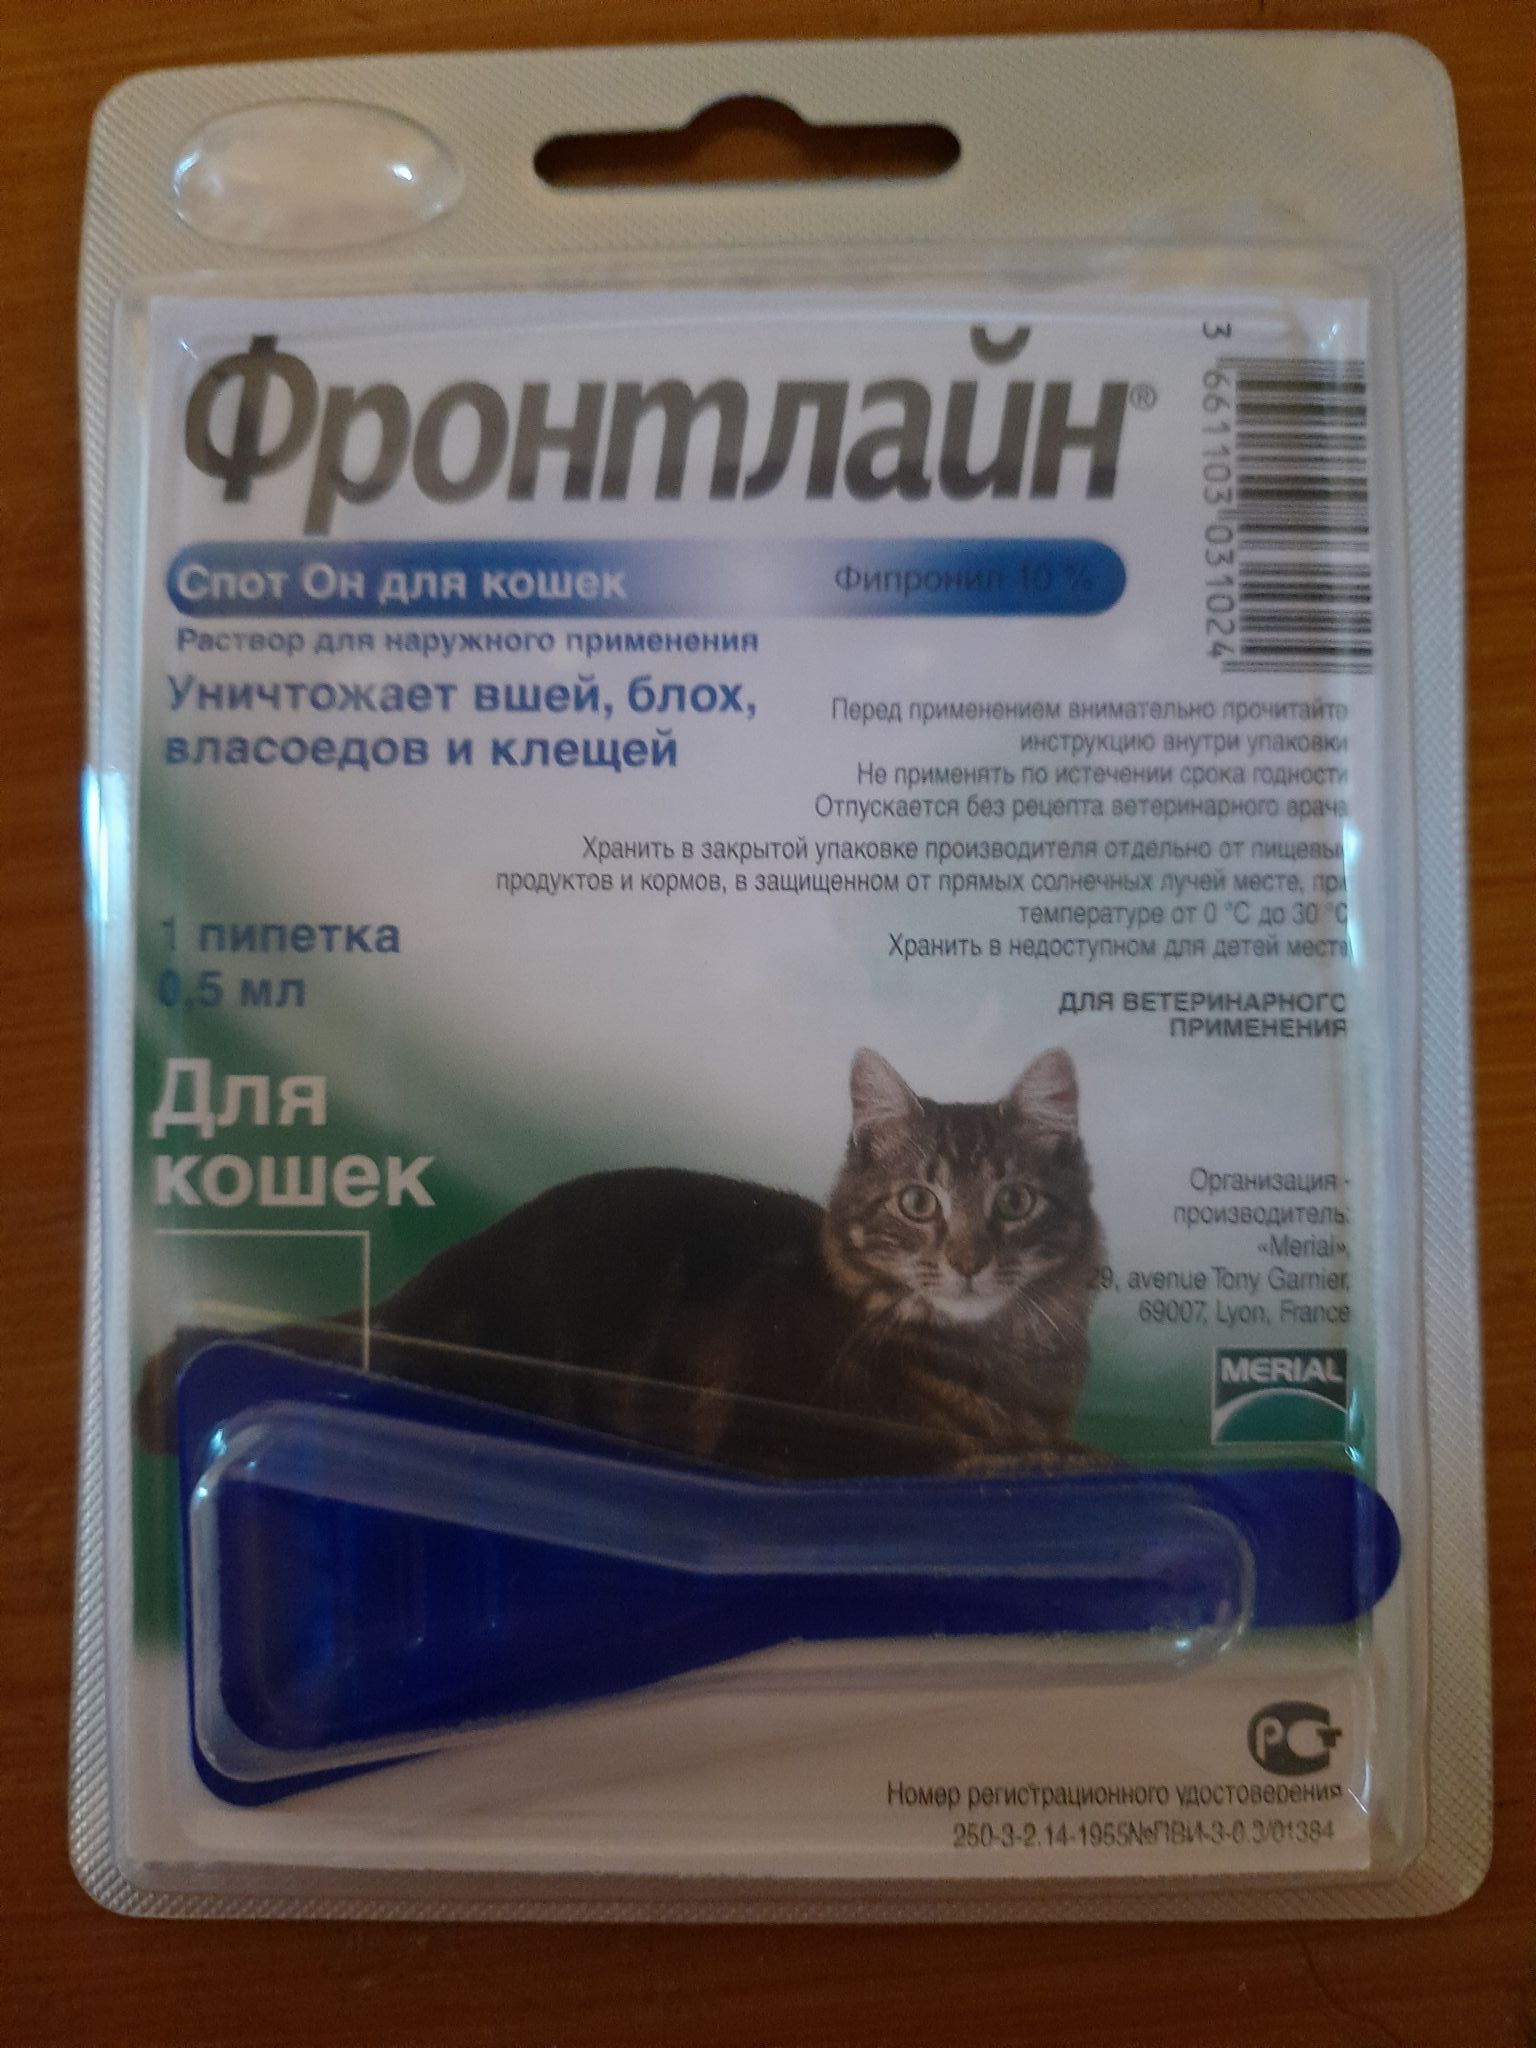 Фронтлайн для кошек купить в москве